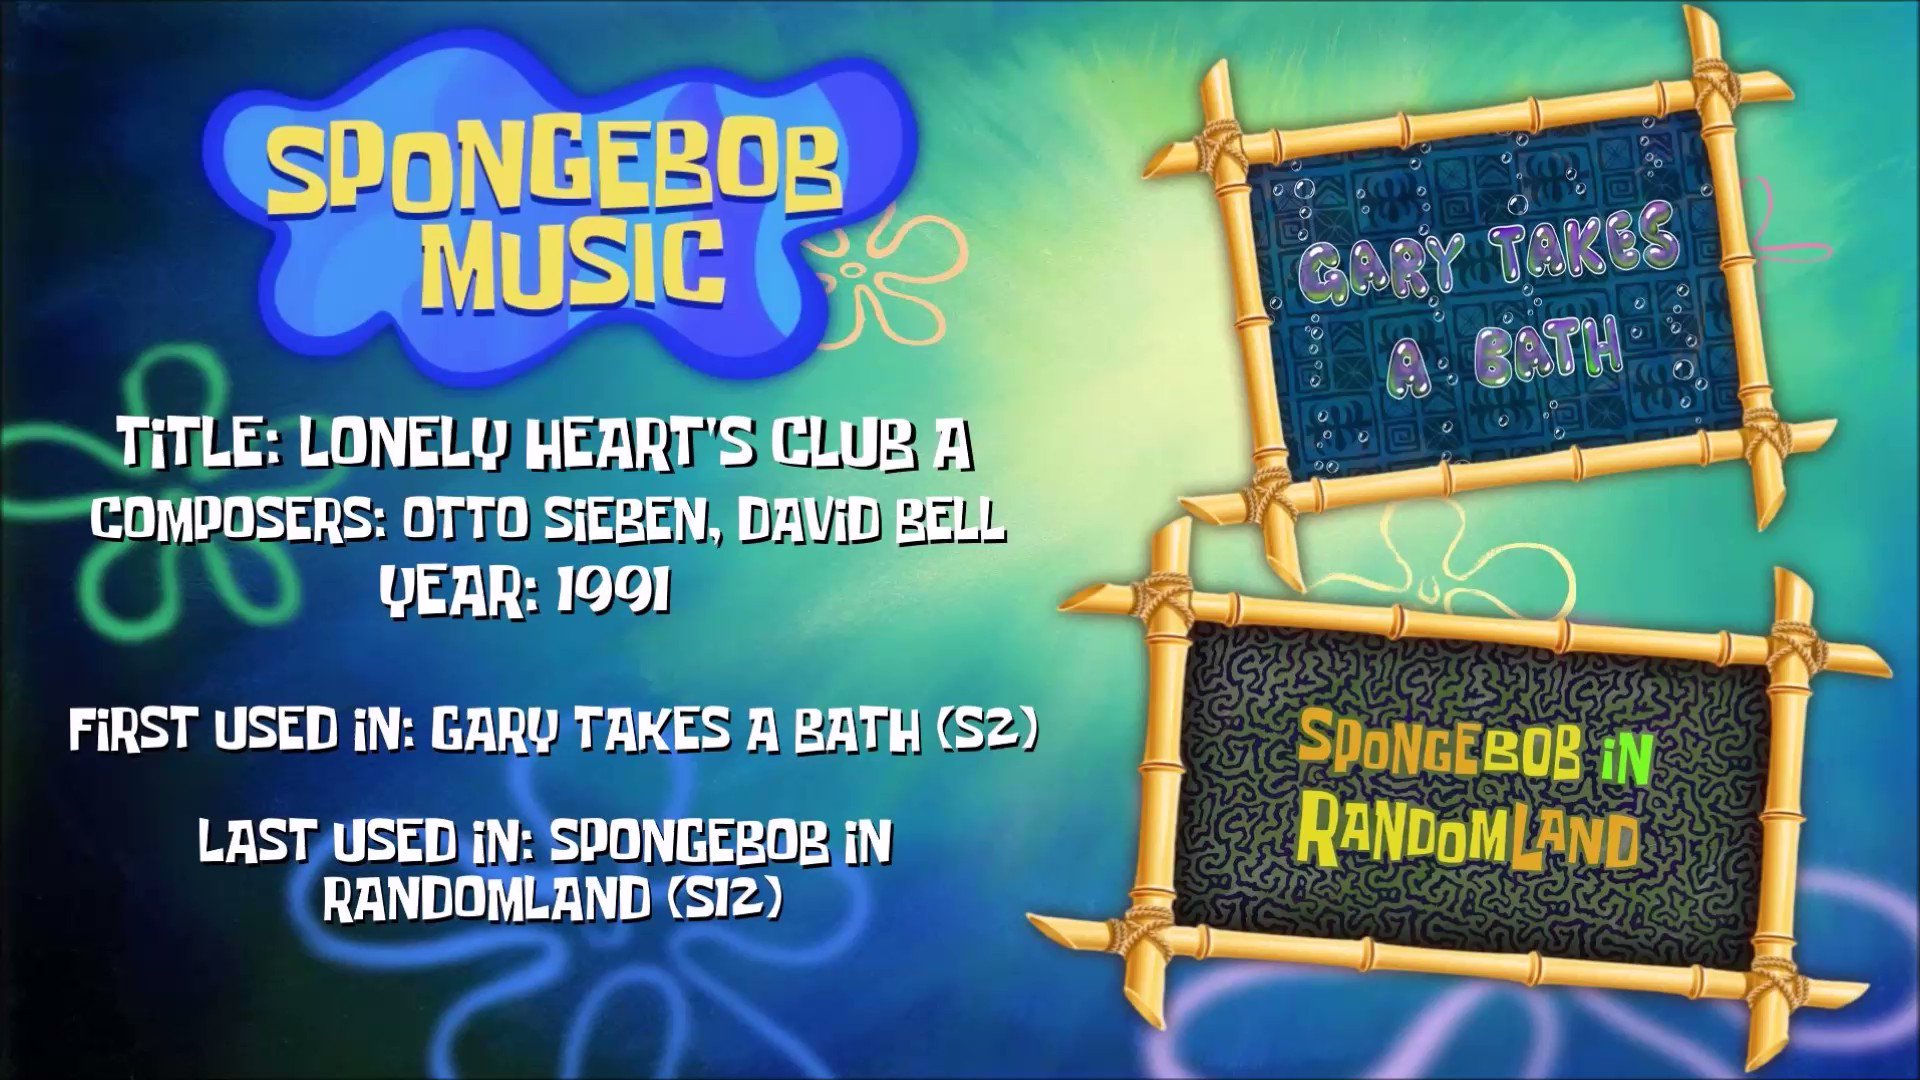 SpongeBob Music Lonely Heart's Club (a) by Troyboy4O9